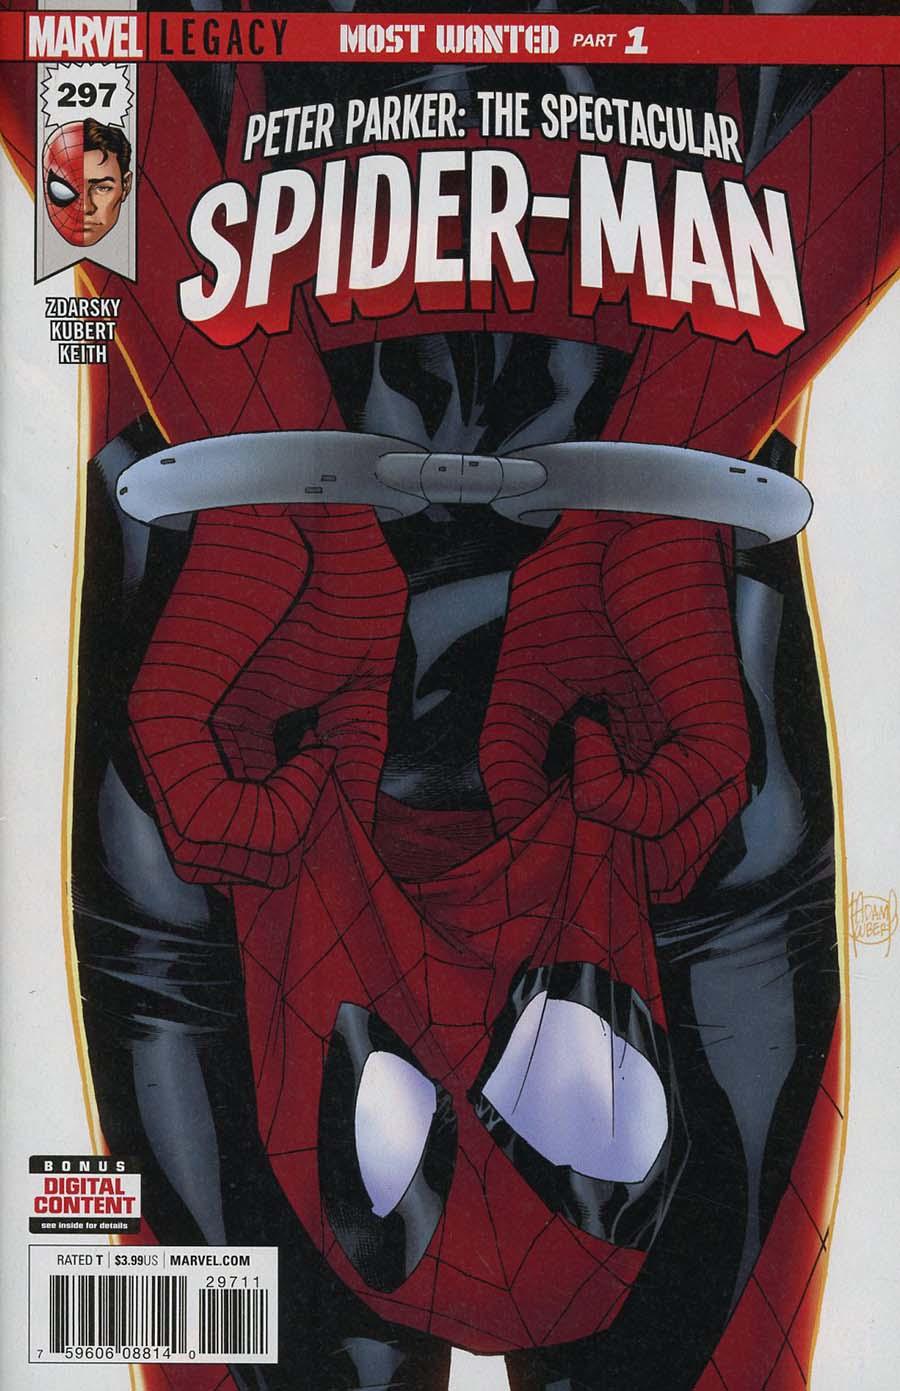 Peter Parker Spectacular Spider-Man Vol. 1 #297